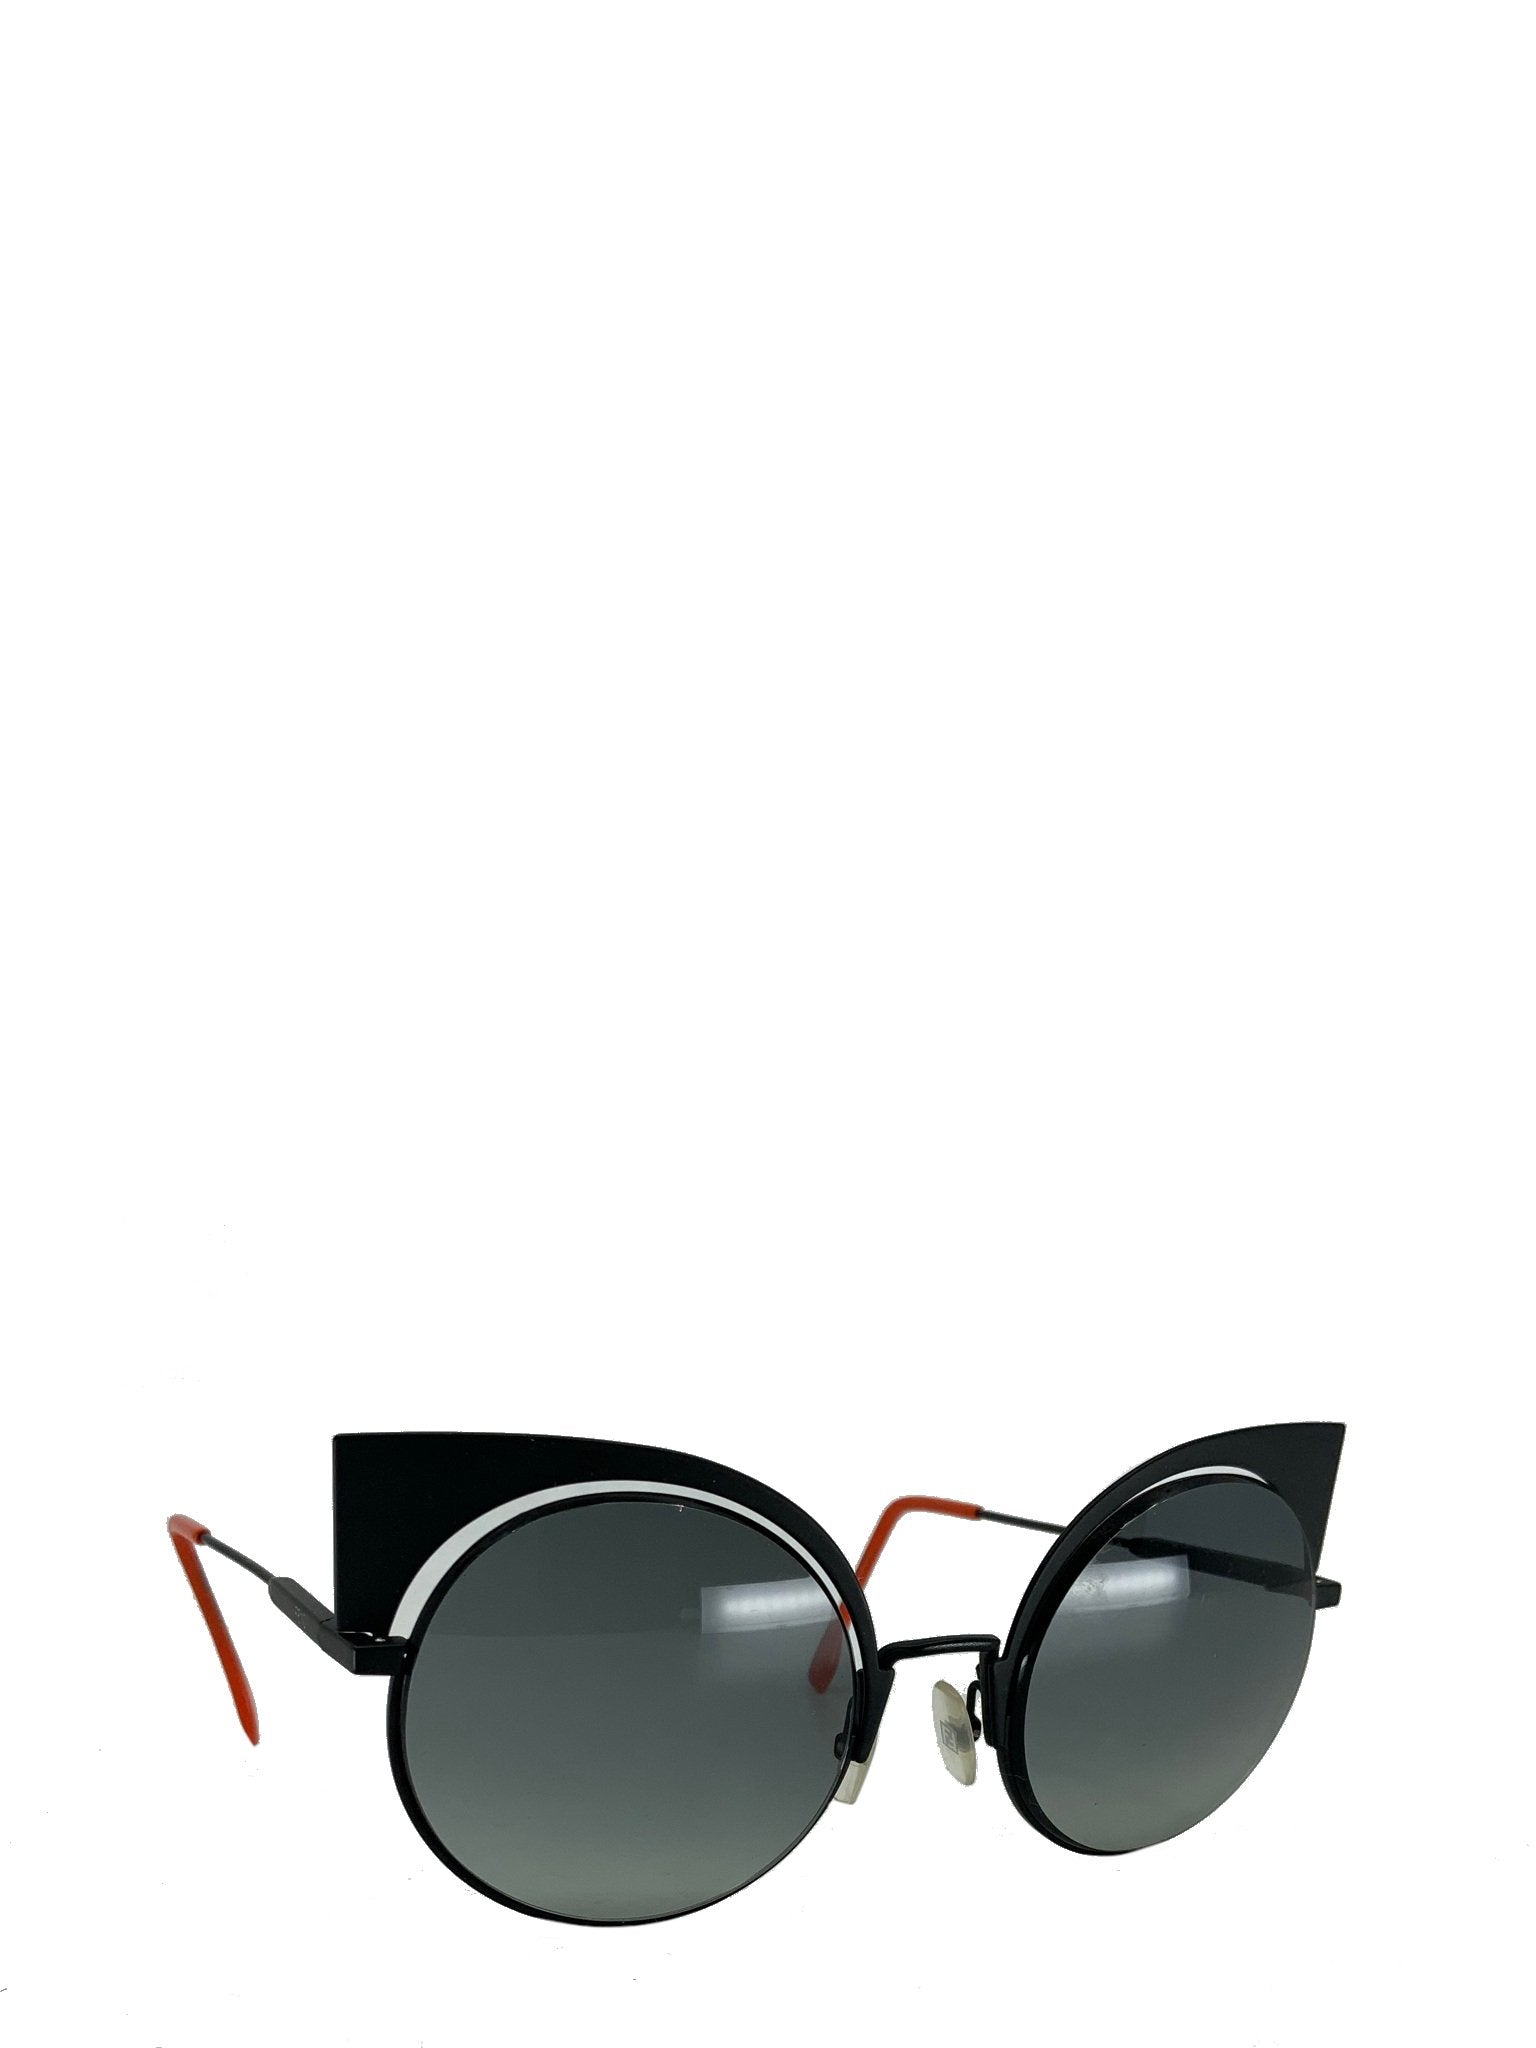 Fendi Eyeshine Eye Sunglasses NEW - Designs